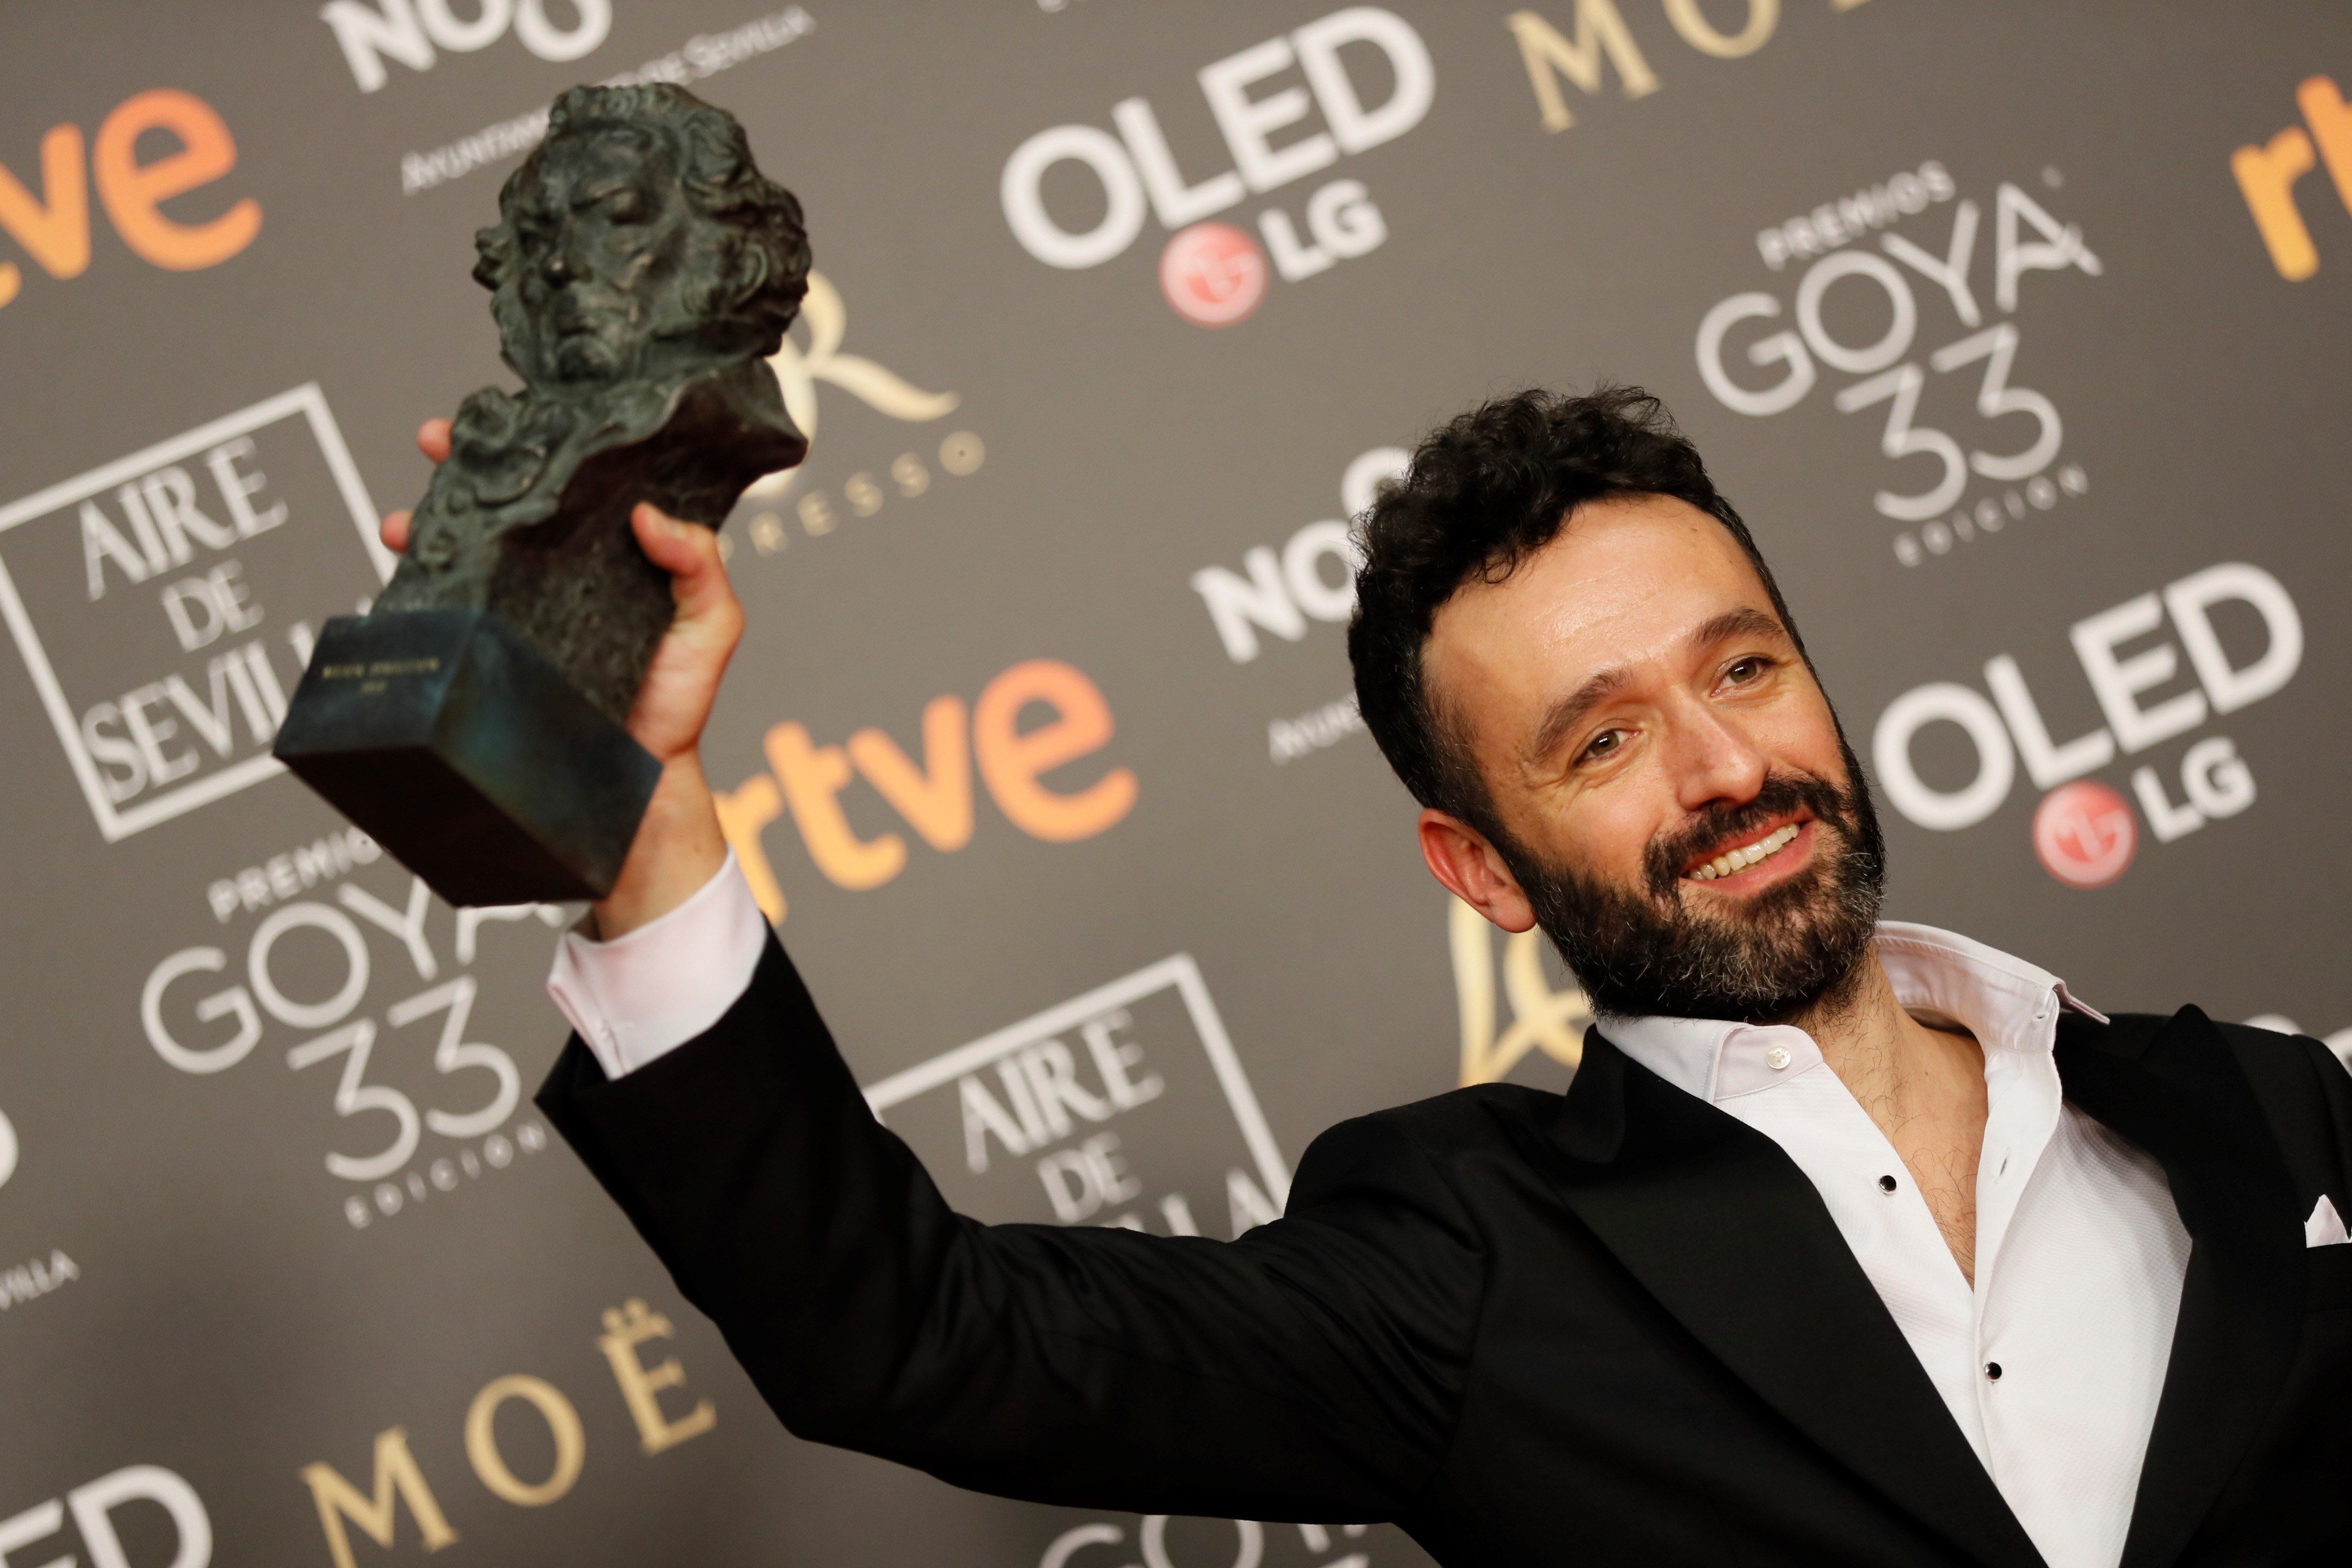 El director Rodrigo Sorogoyen alza el Goya a mejor dirección, por su película "El Reino". (EFE).